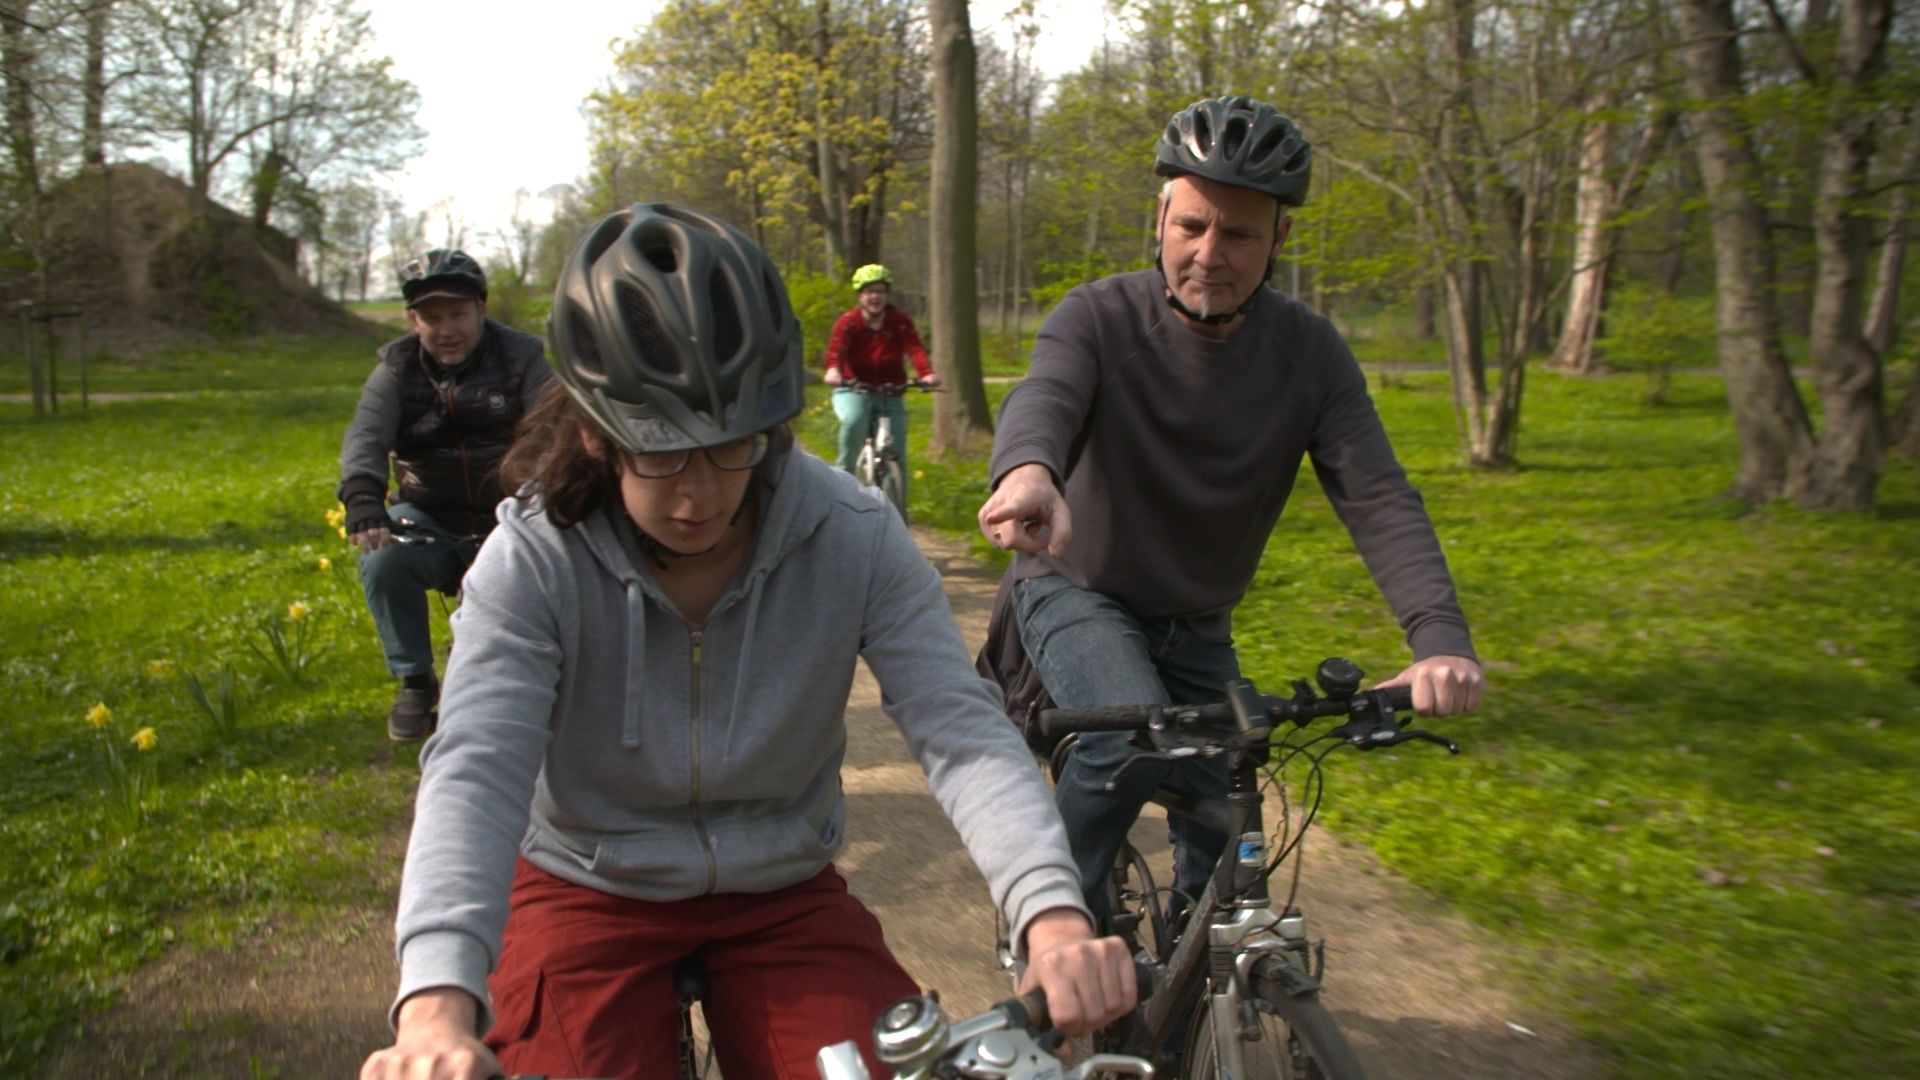 Über Fahrradfahren können Bewegungsfreiräume erweitert und Menschen somit aktiver werden.